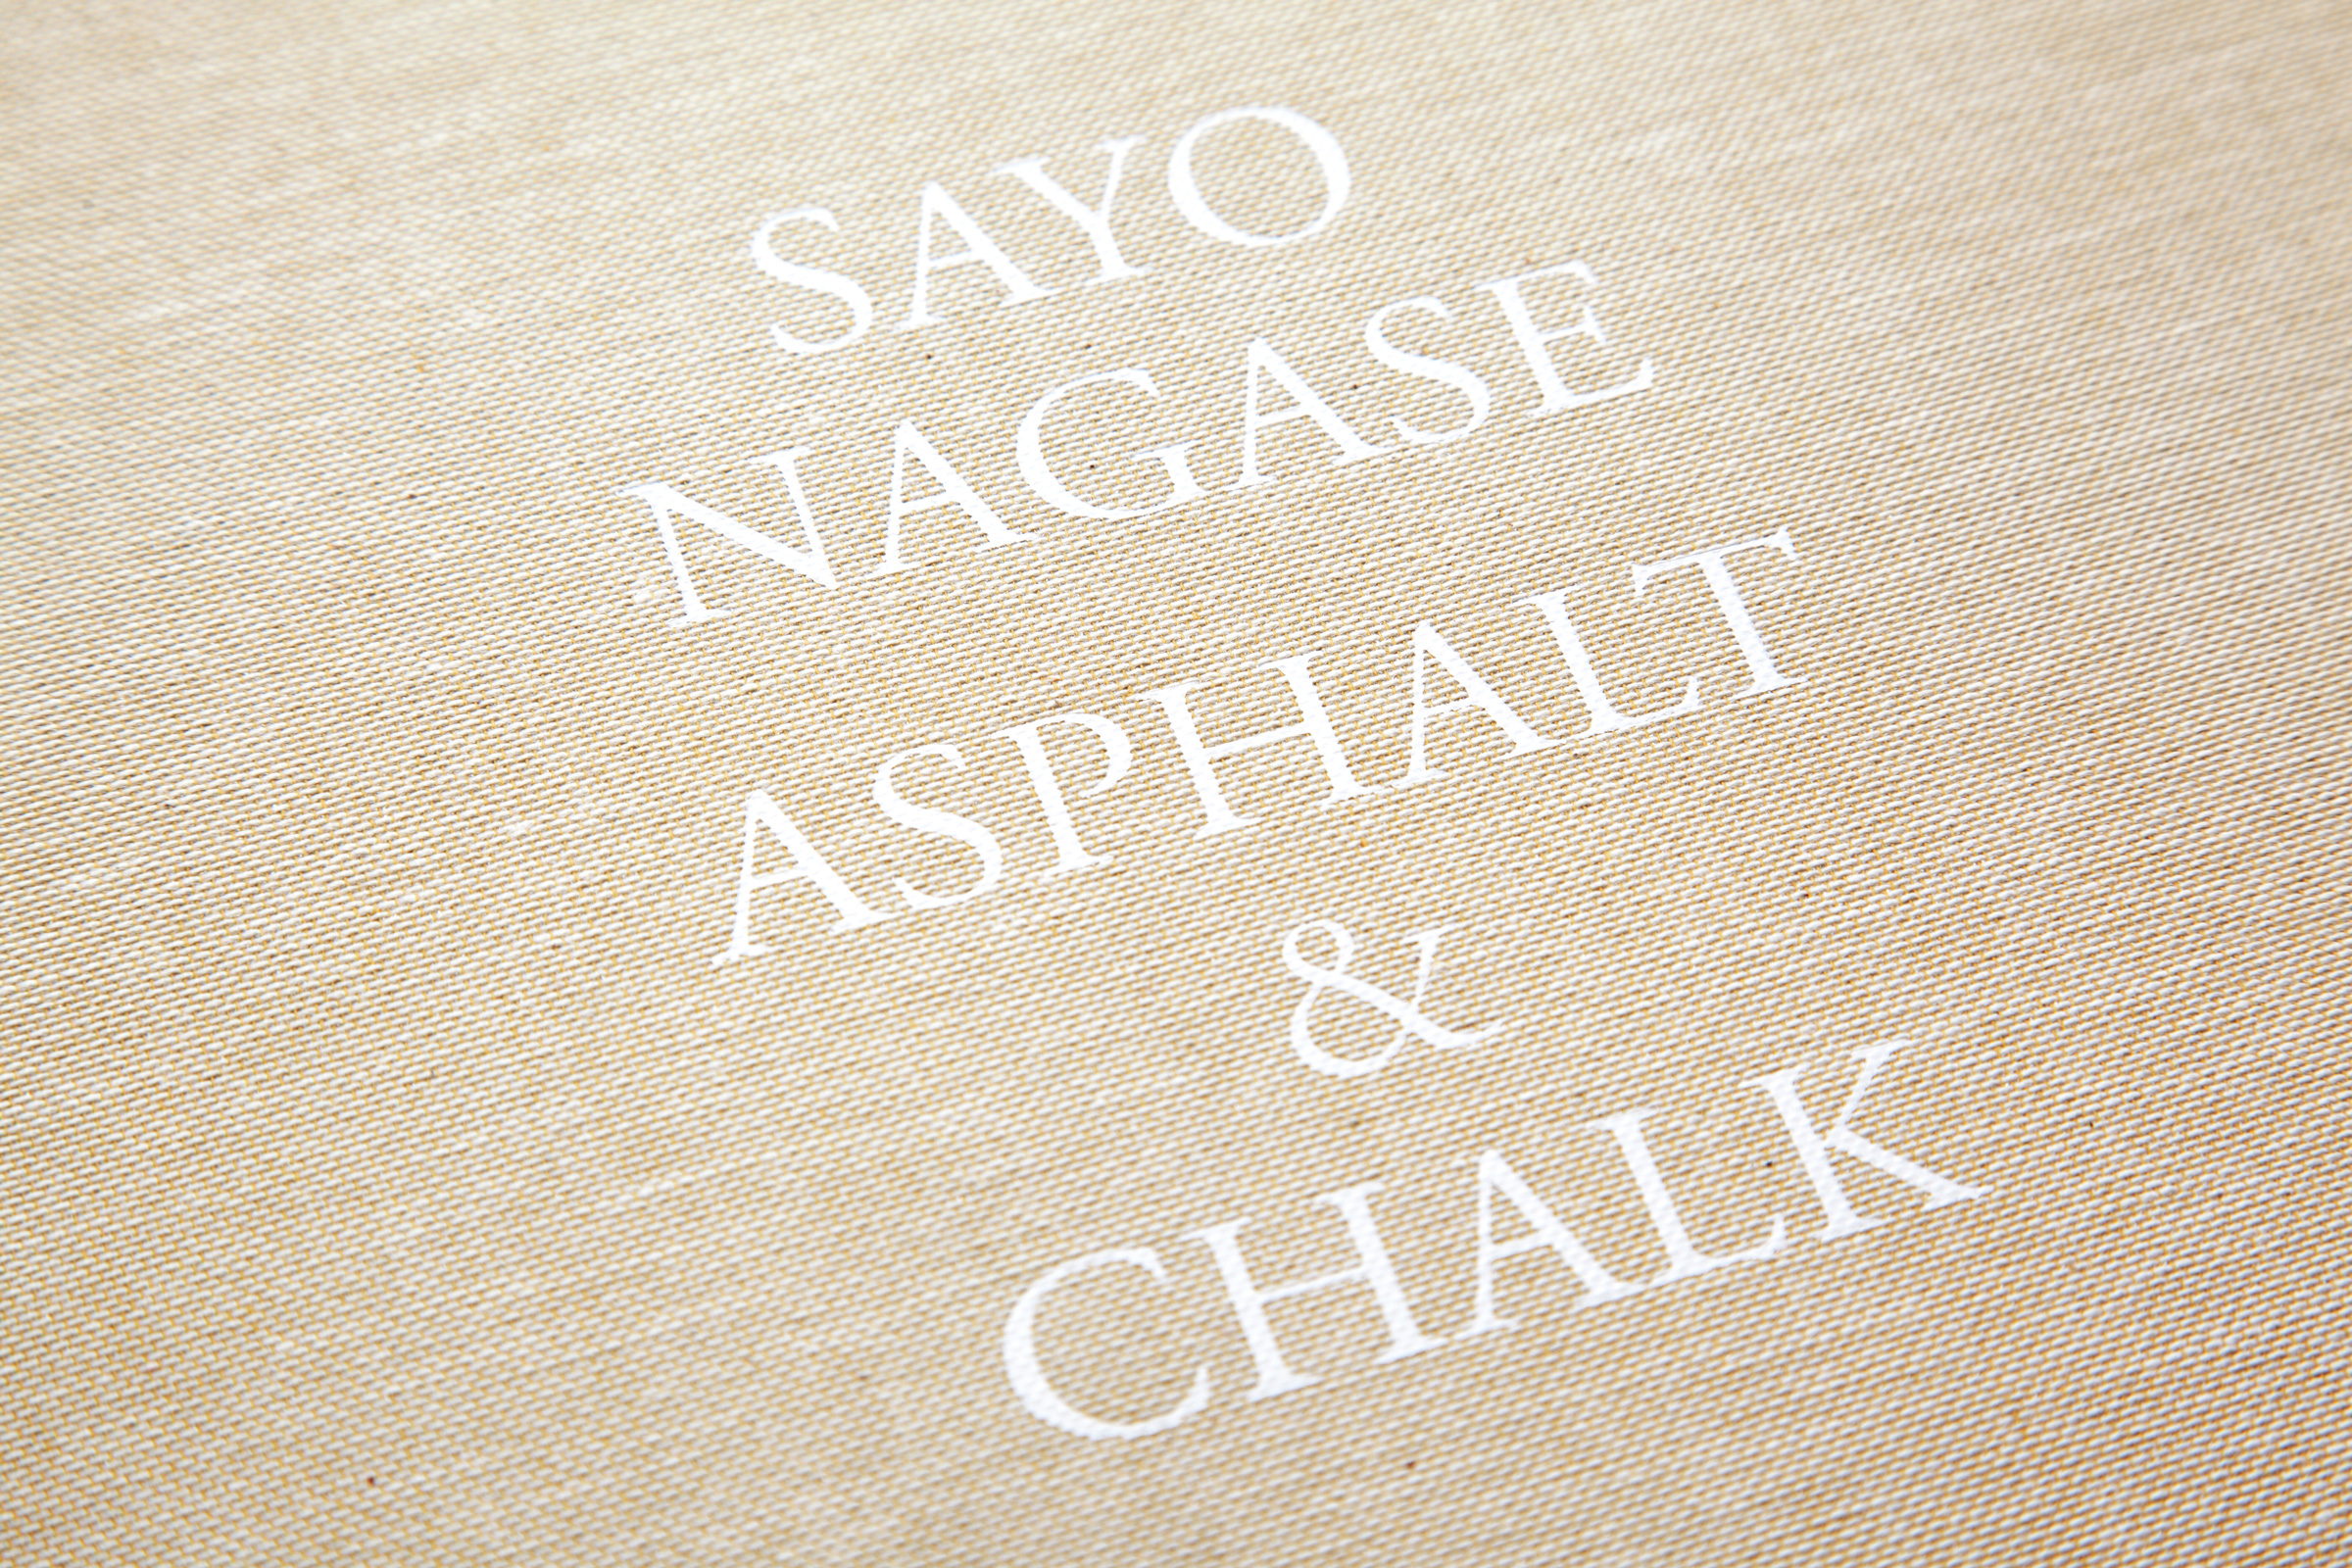 Sayo Nagase – Asphalt & Chalk